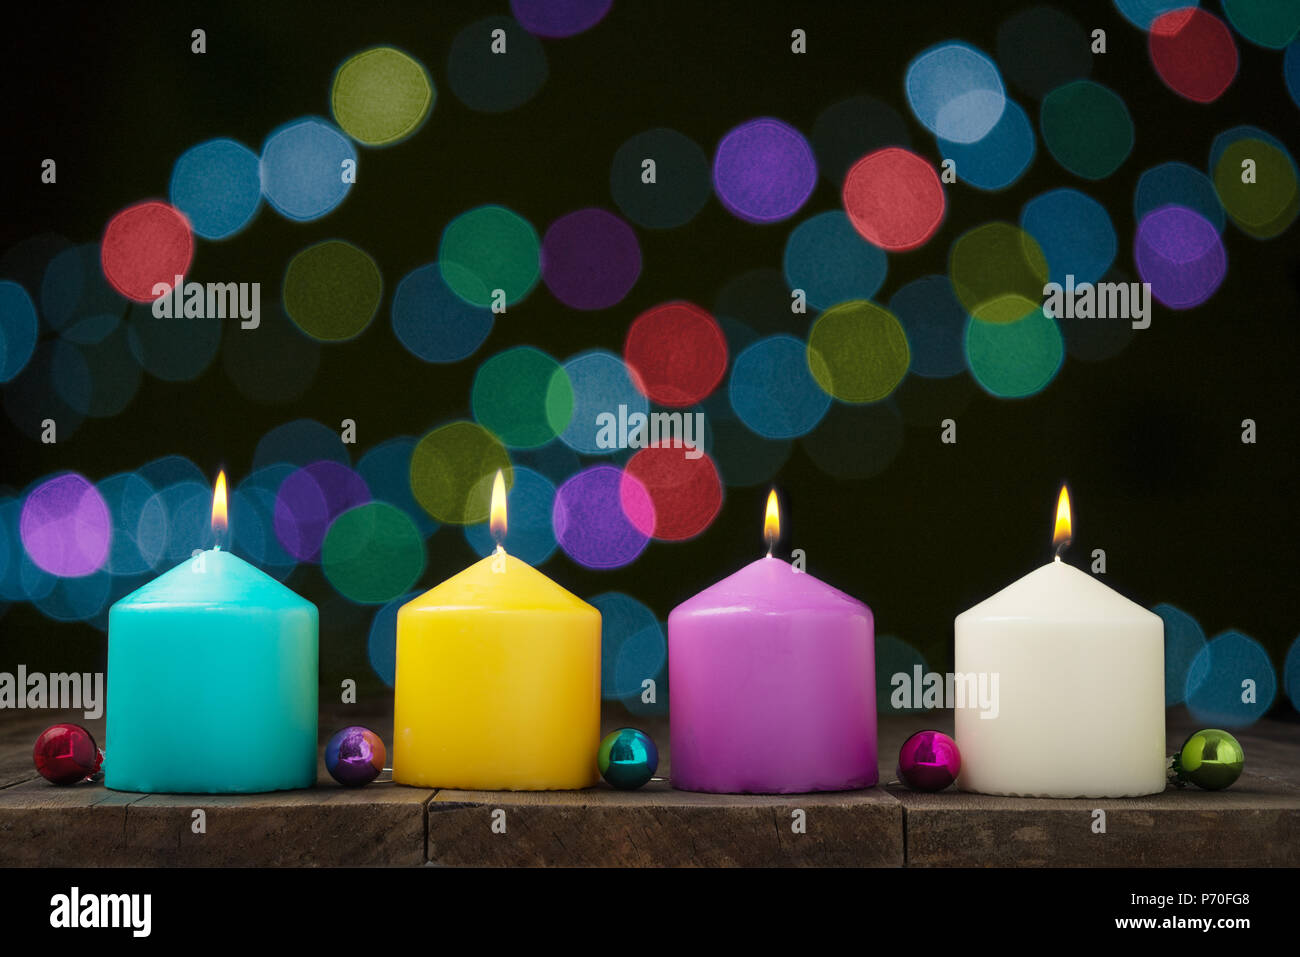 Encendido de velas multicolores con bokeh de fondo negro.Concepto de Navidad y Año Nuevo Foto de stock